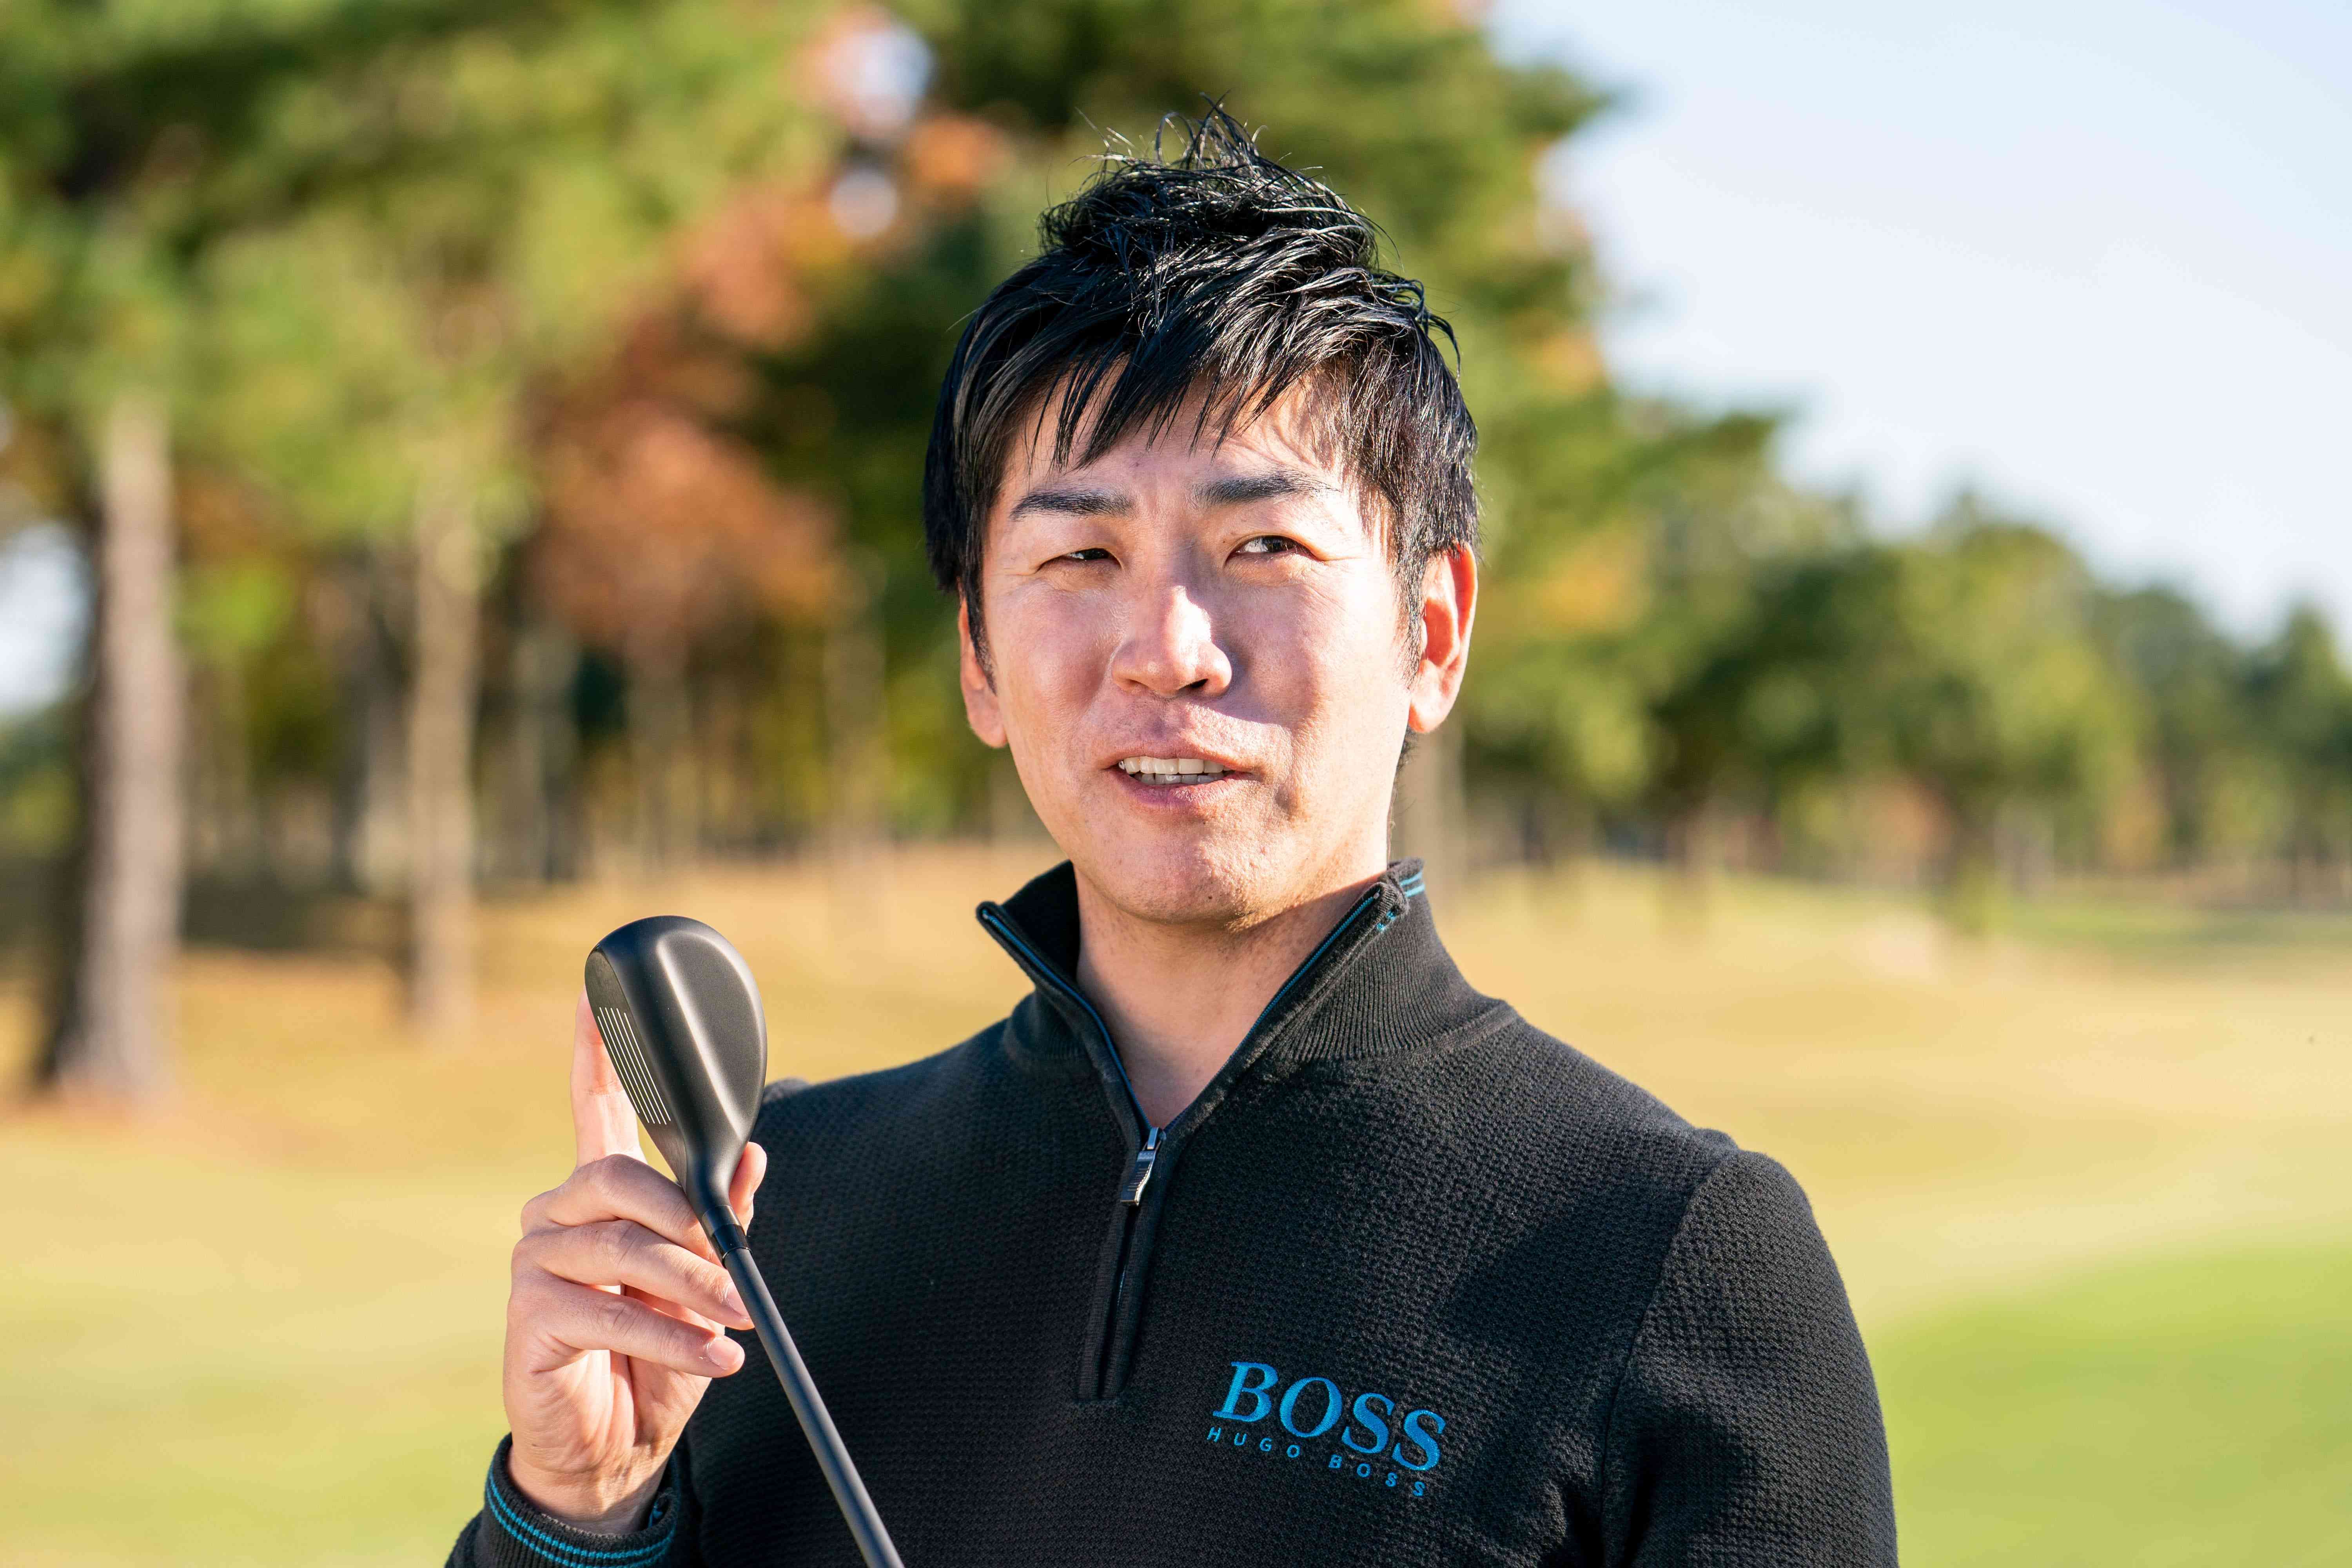 試打解説
吉田洋一郎プロ
よしだひろいちろう、1978 年生まれ。アメリカTop50 インストラクターなど80人以上に直接メソッドを学び、レッスンスキル資格20 以上を所得するゴルフスイング研究家。フォーティーンギアを愛用する。
